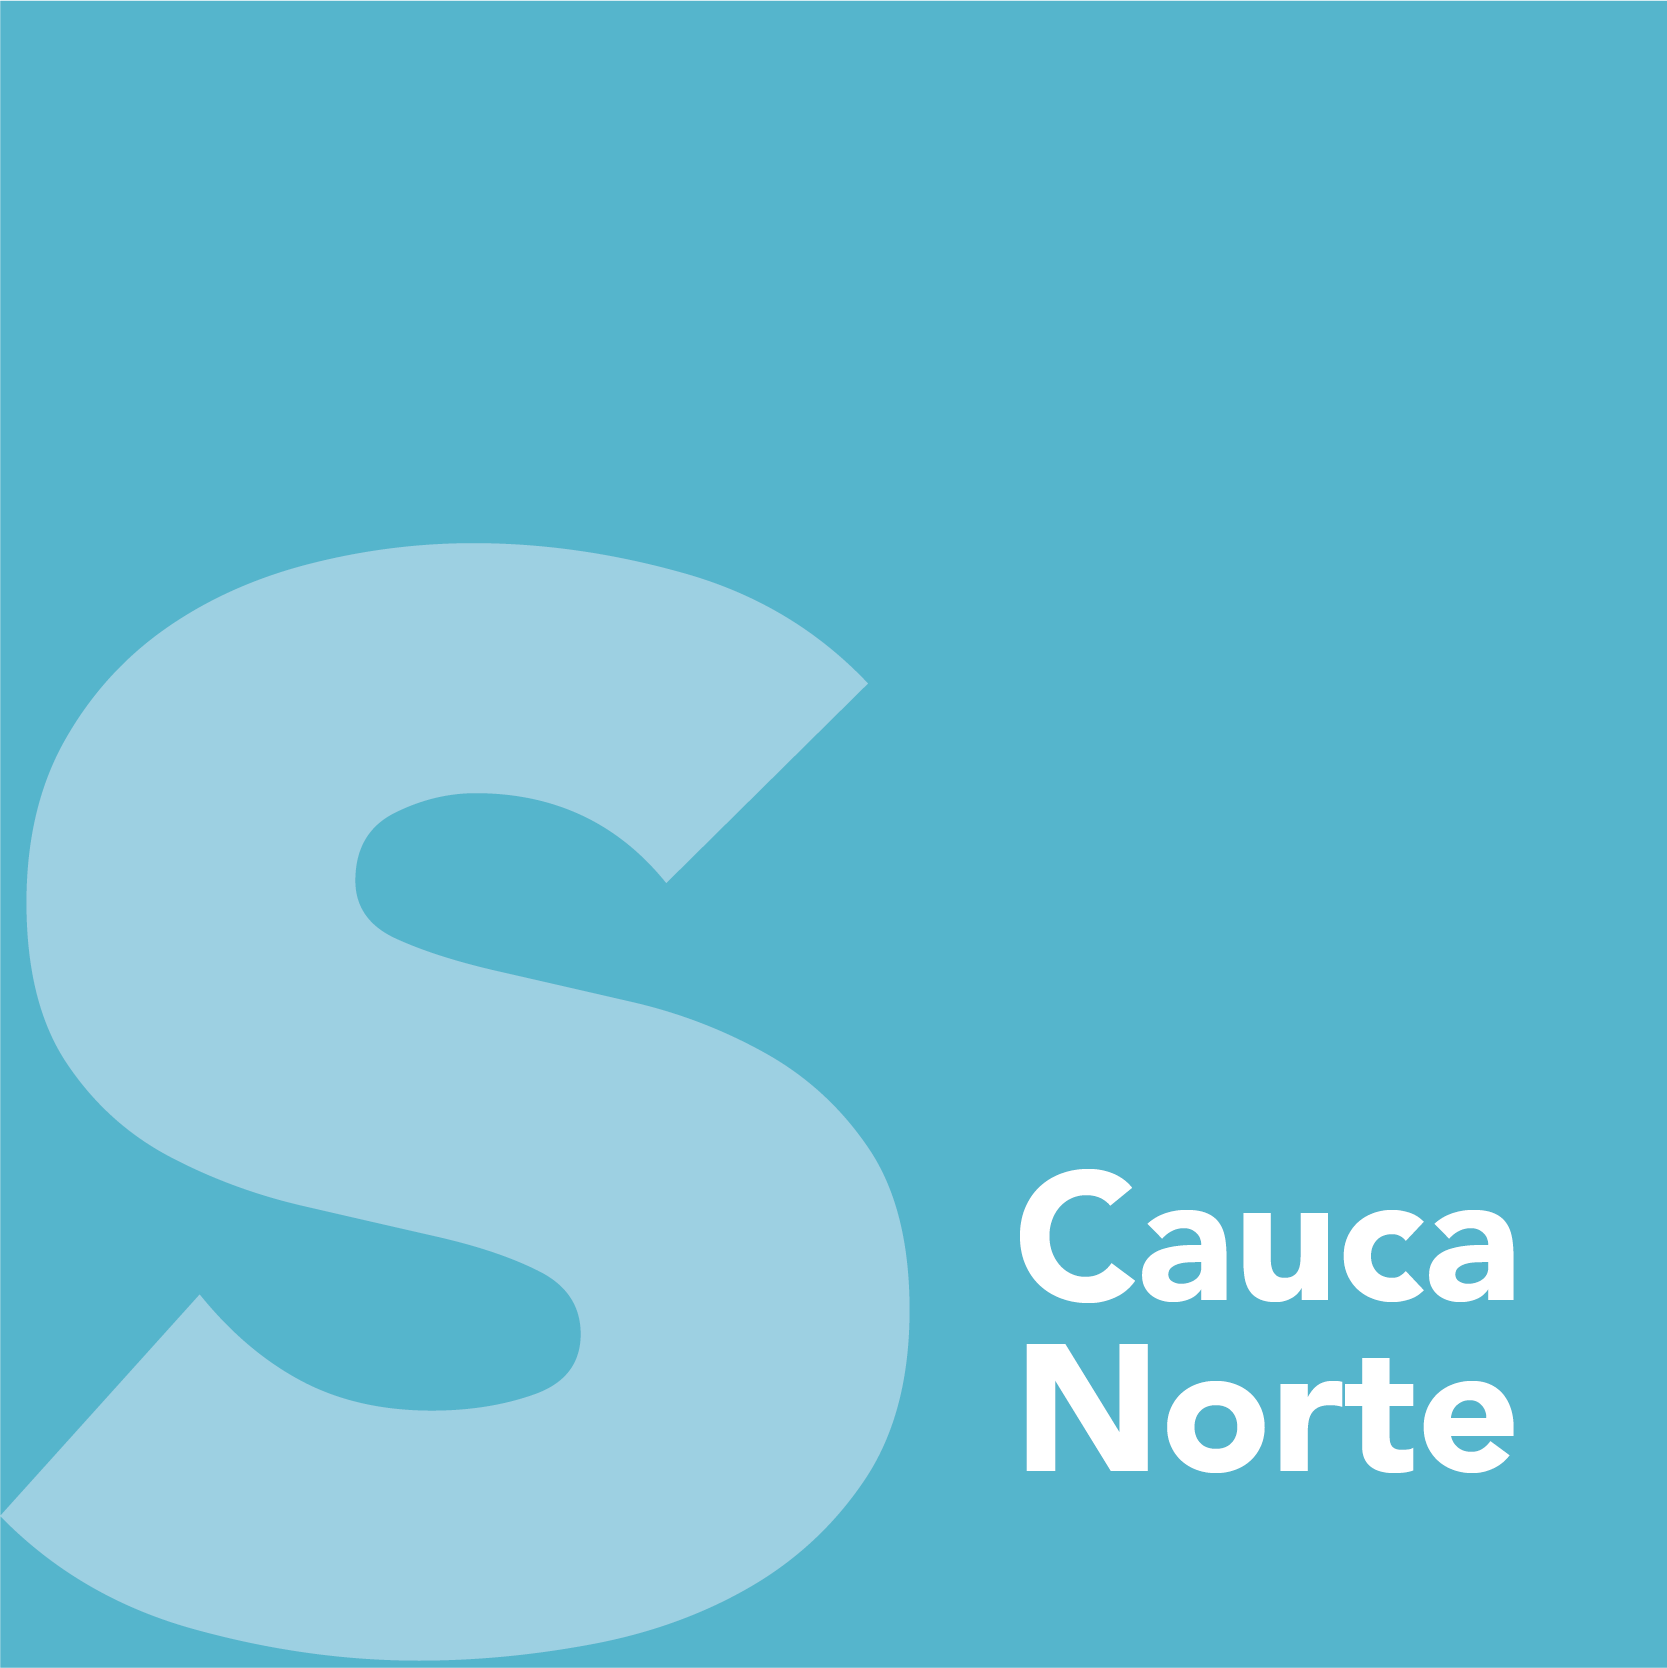 Cauca Norte